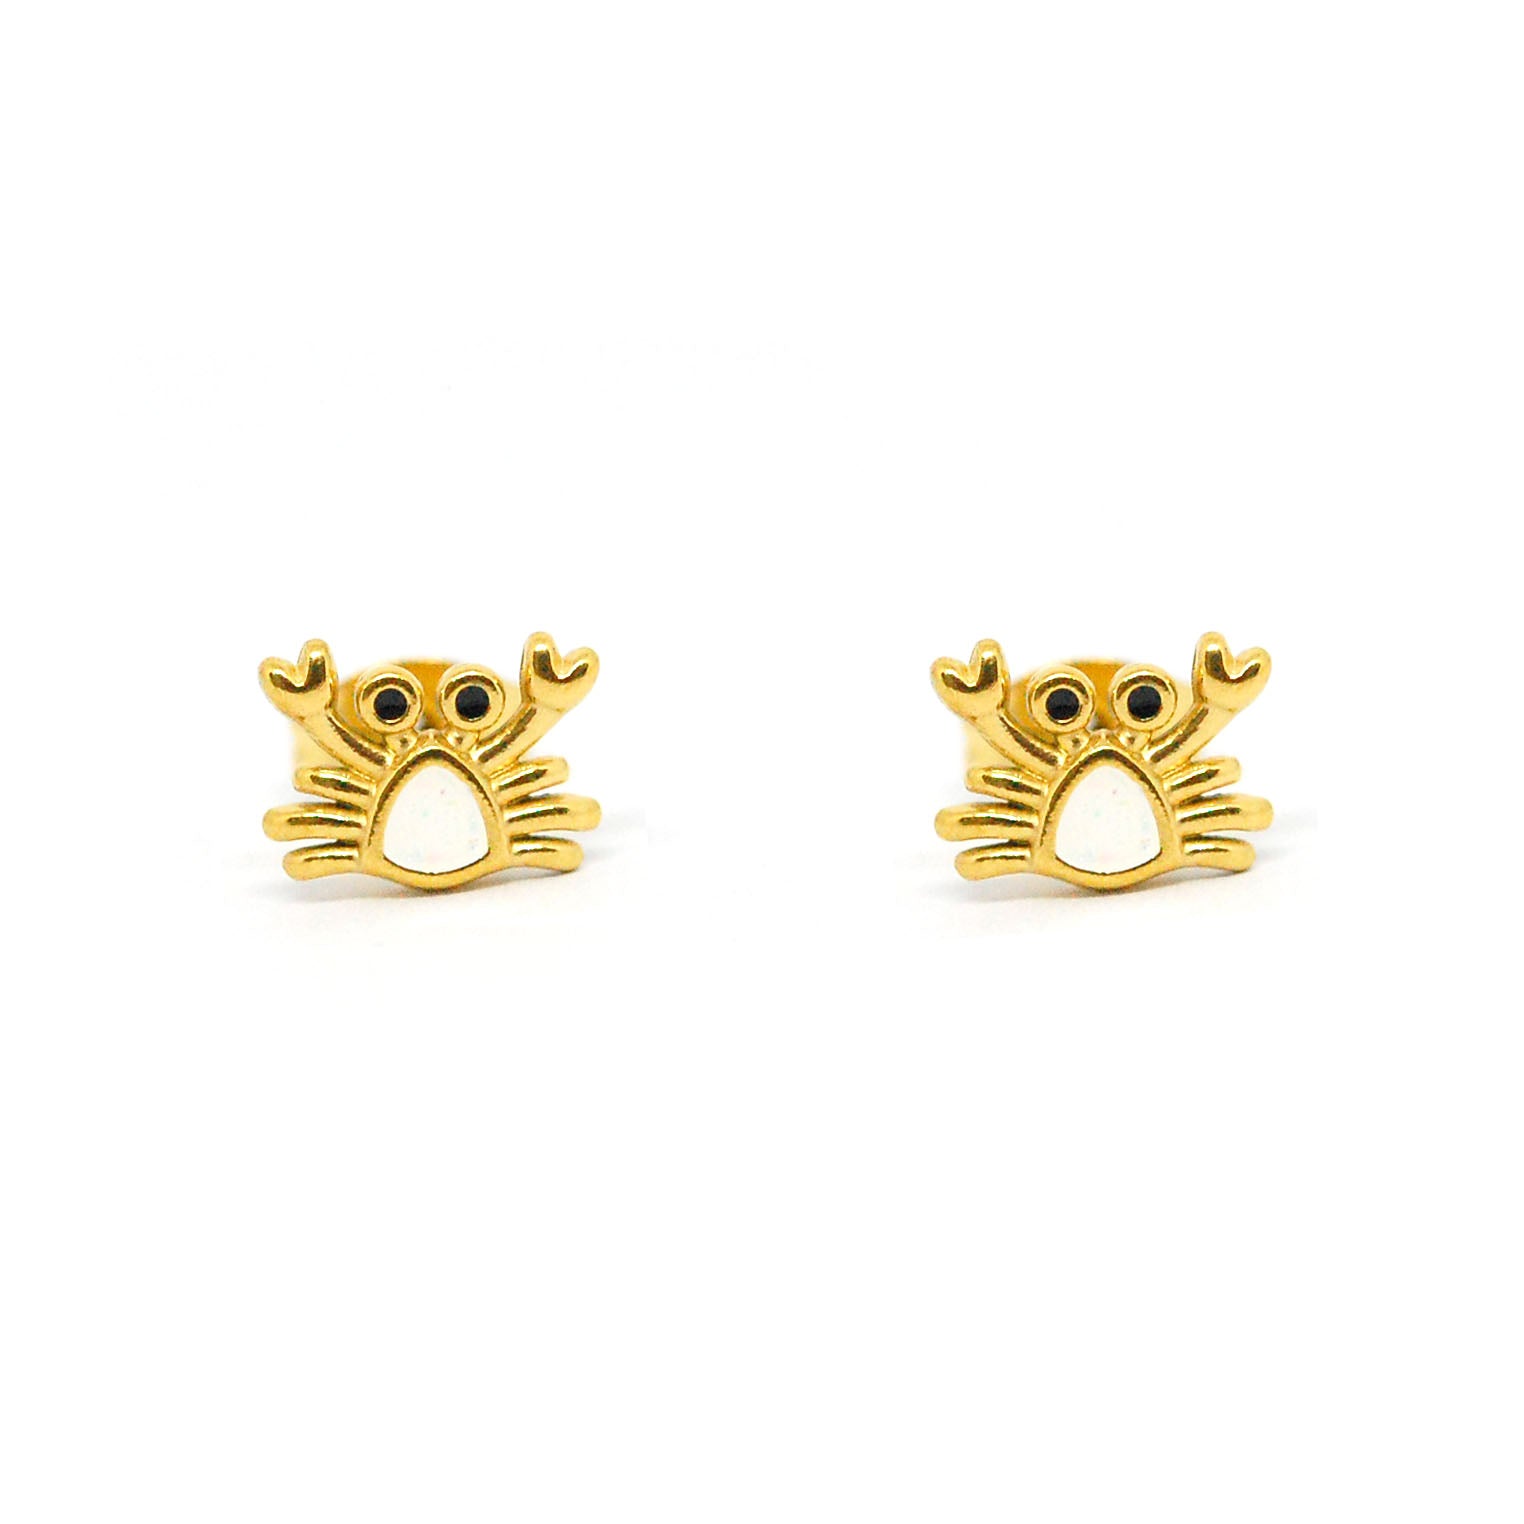 ESE 8147: All IPG Baby Crab w/ Mop Ctr Stud Earrings